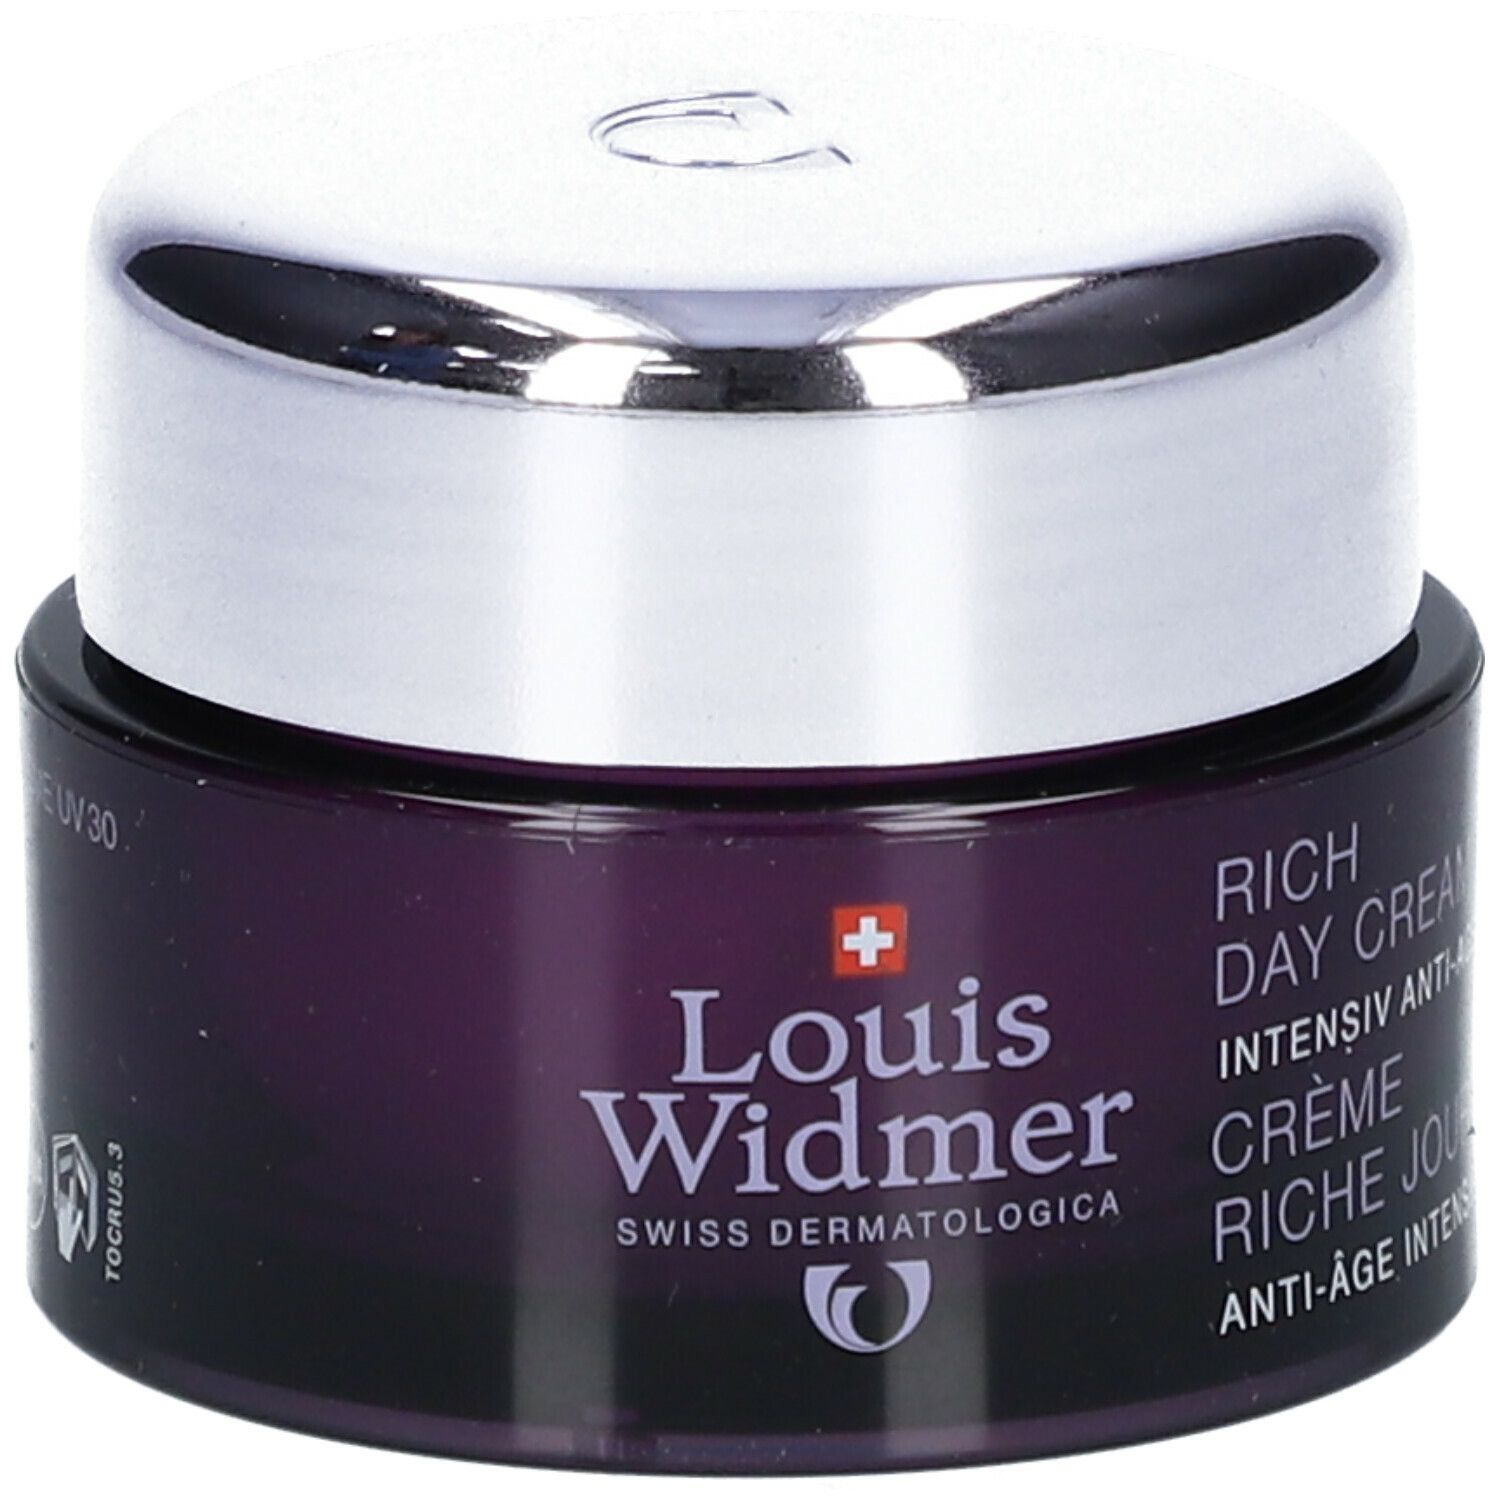 Louis Widmer Crème riche jour parfumée UV30